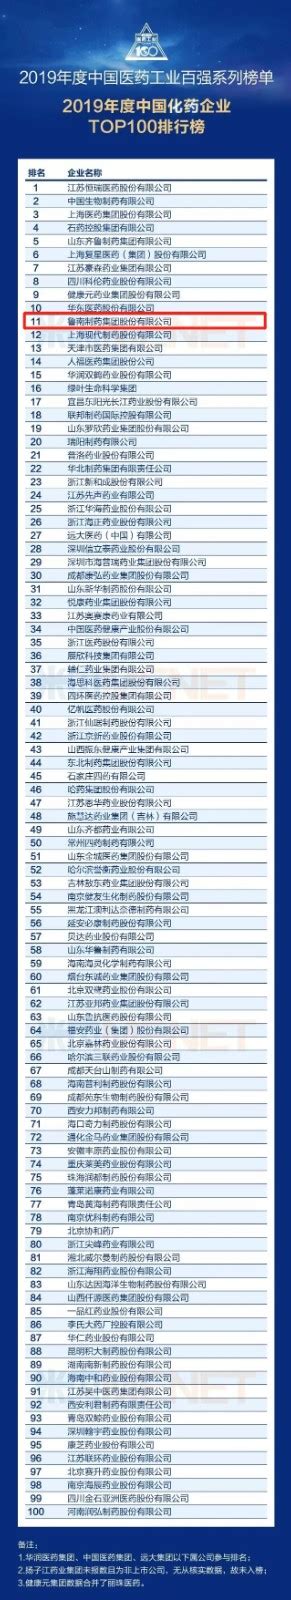 人福医药位列2014年度中国制药工业百强榜第29位 - 人福医药集团股份公司